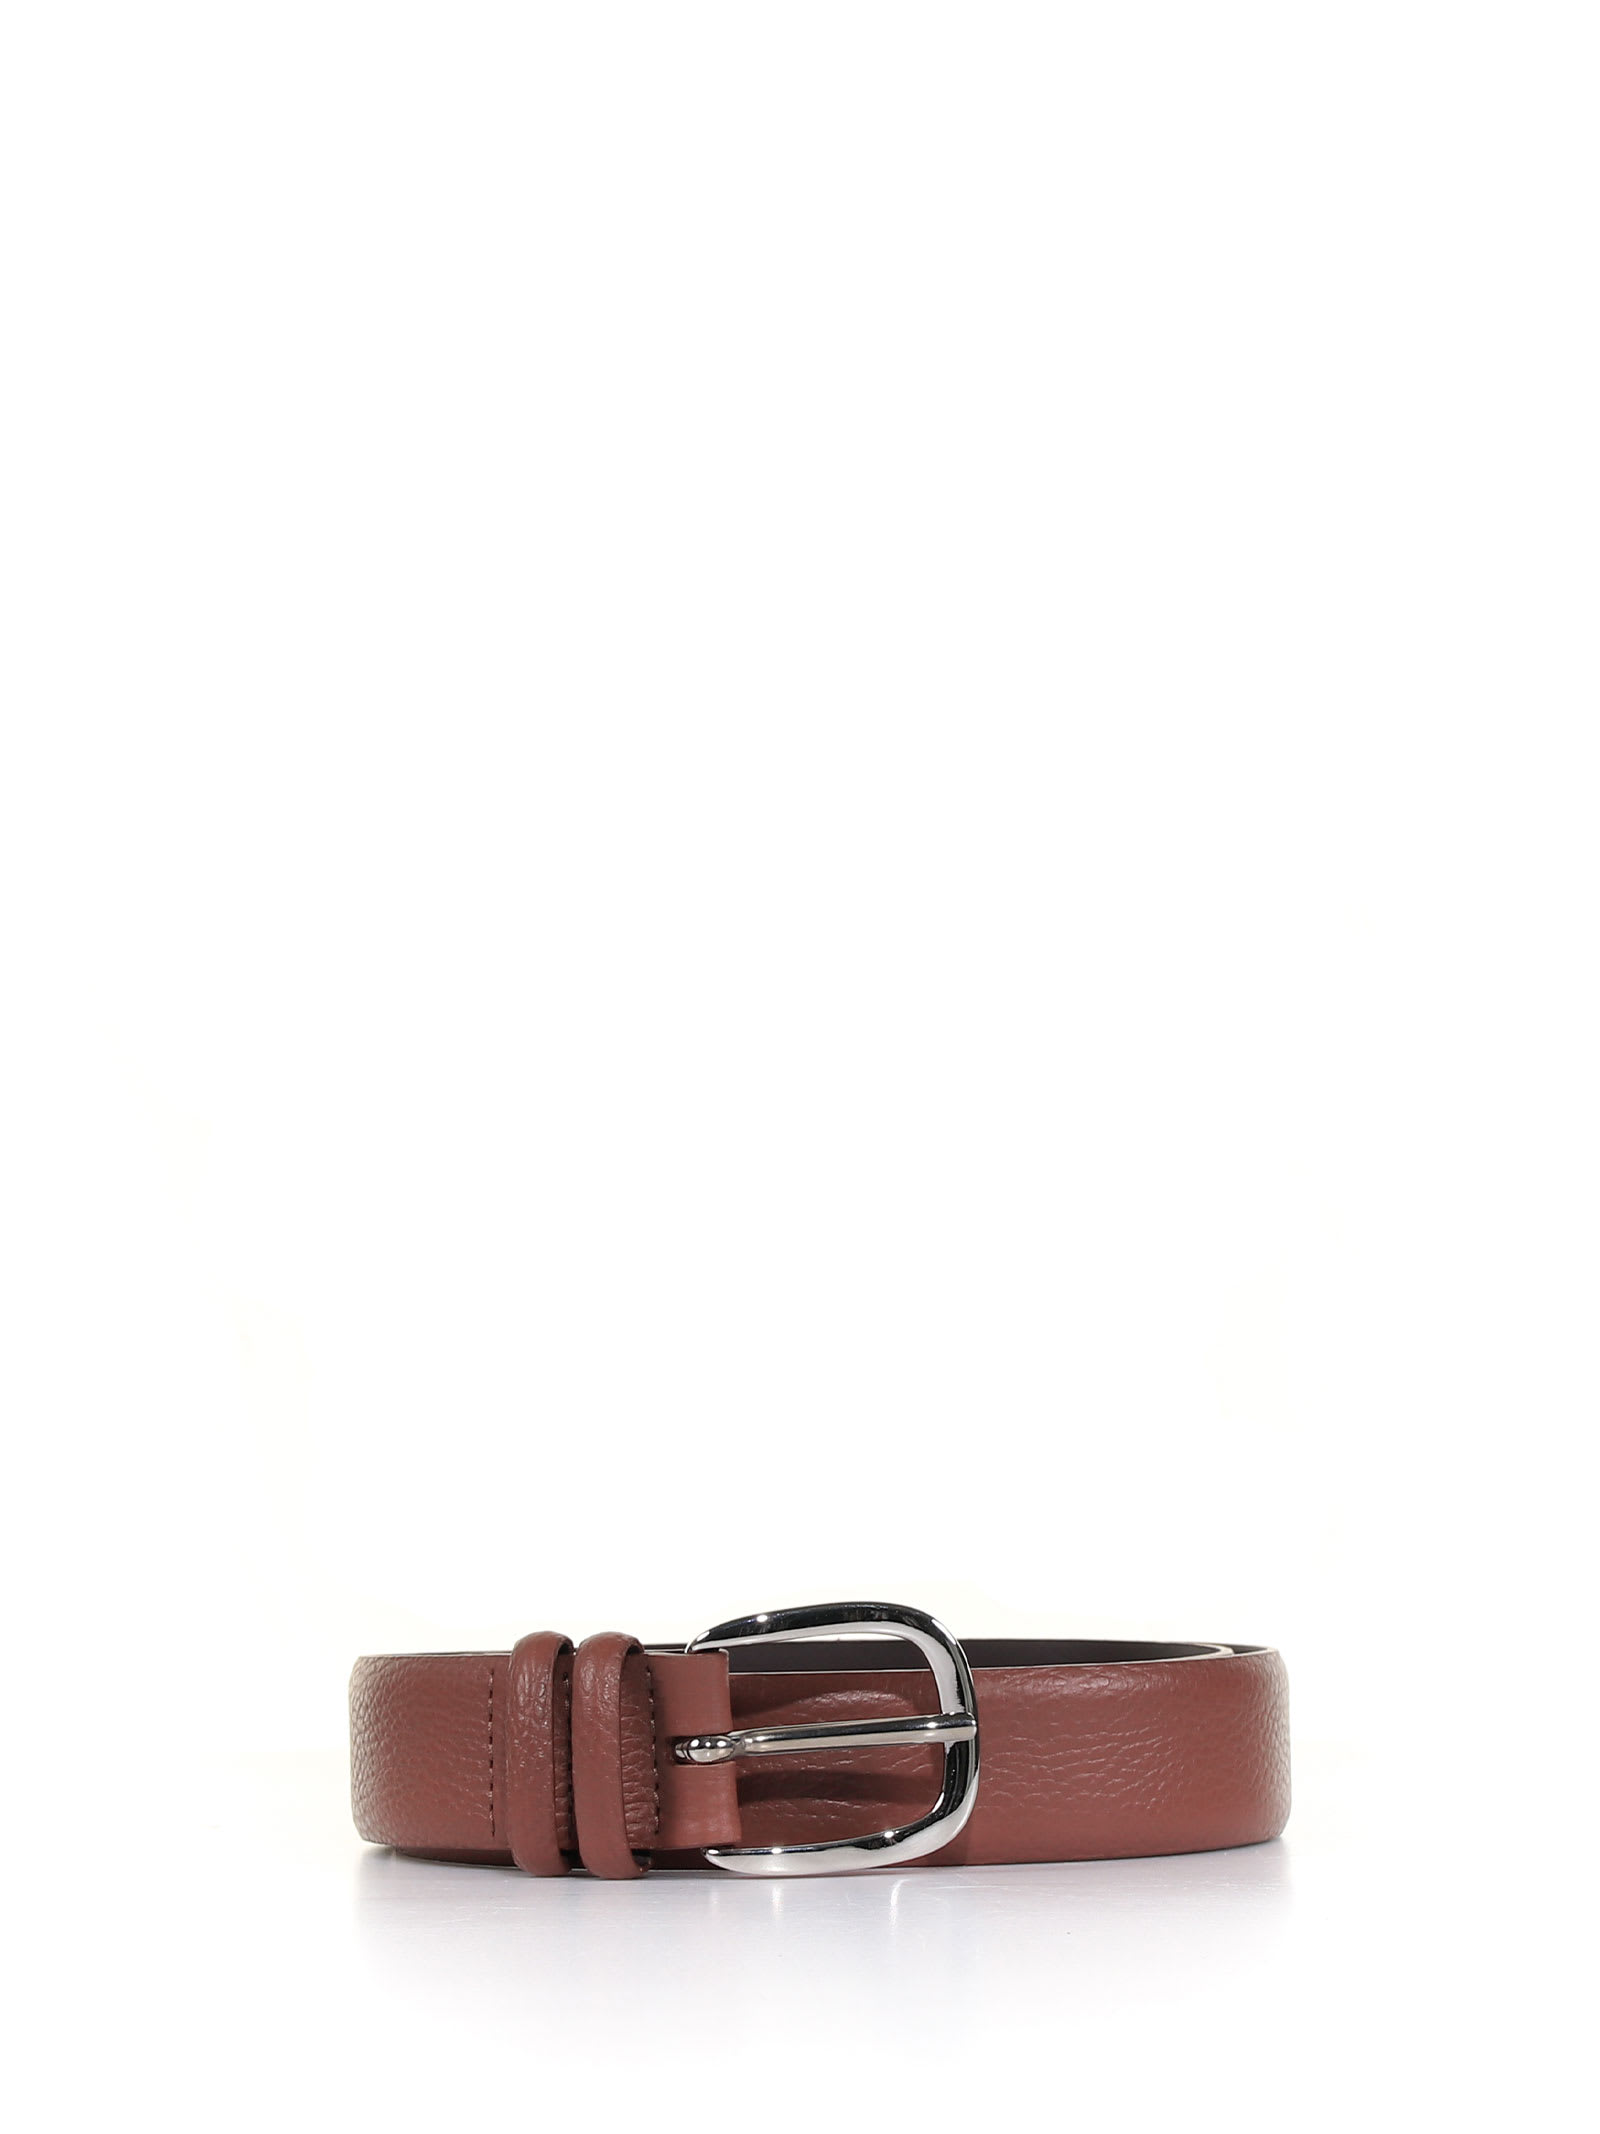 Orciani Dollar Leather Belt